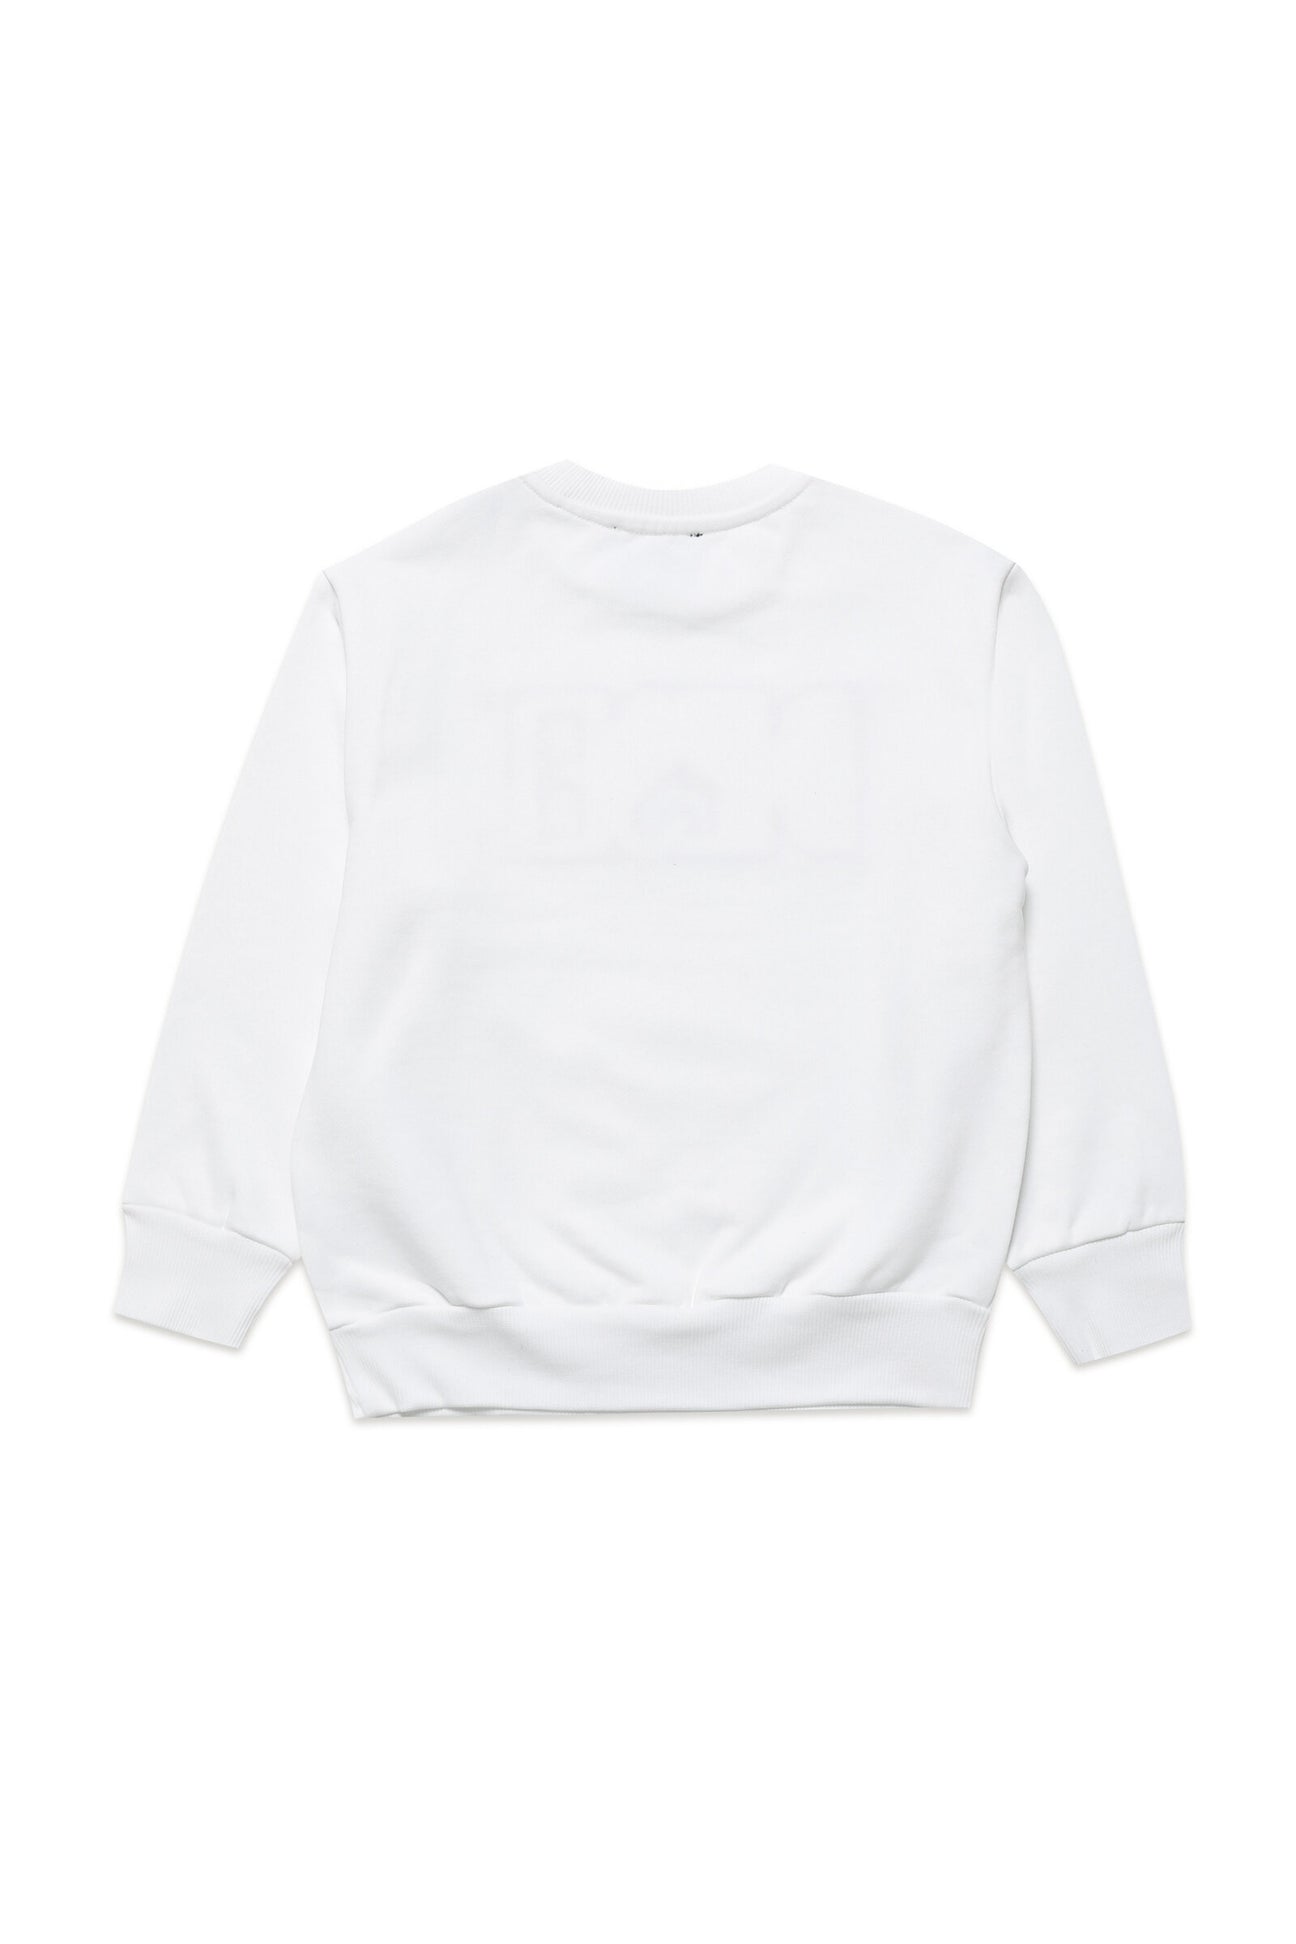 White sweatshirt with Diesel logo applique White sweatshirt with Diesel logo applique